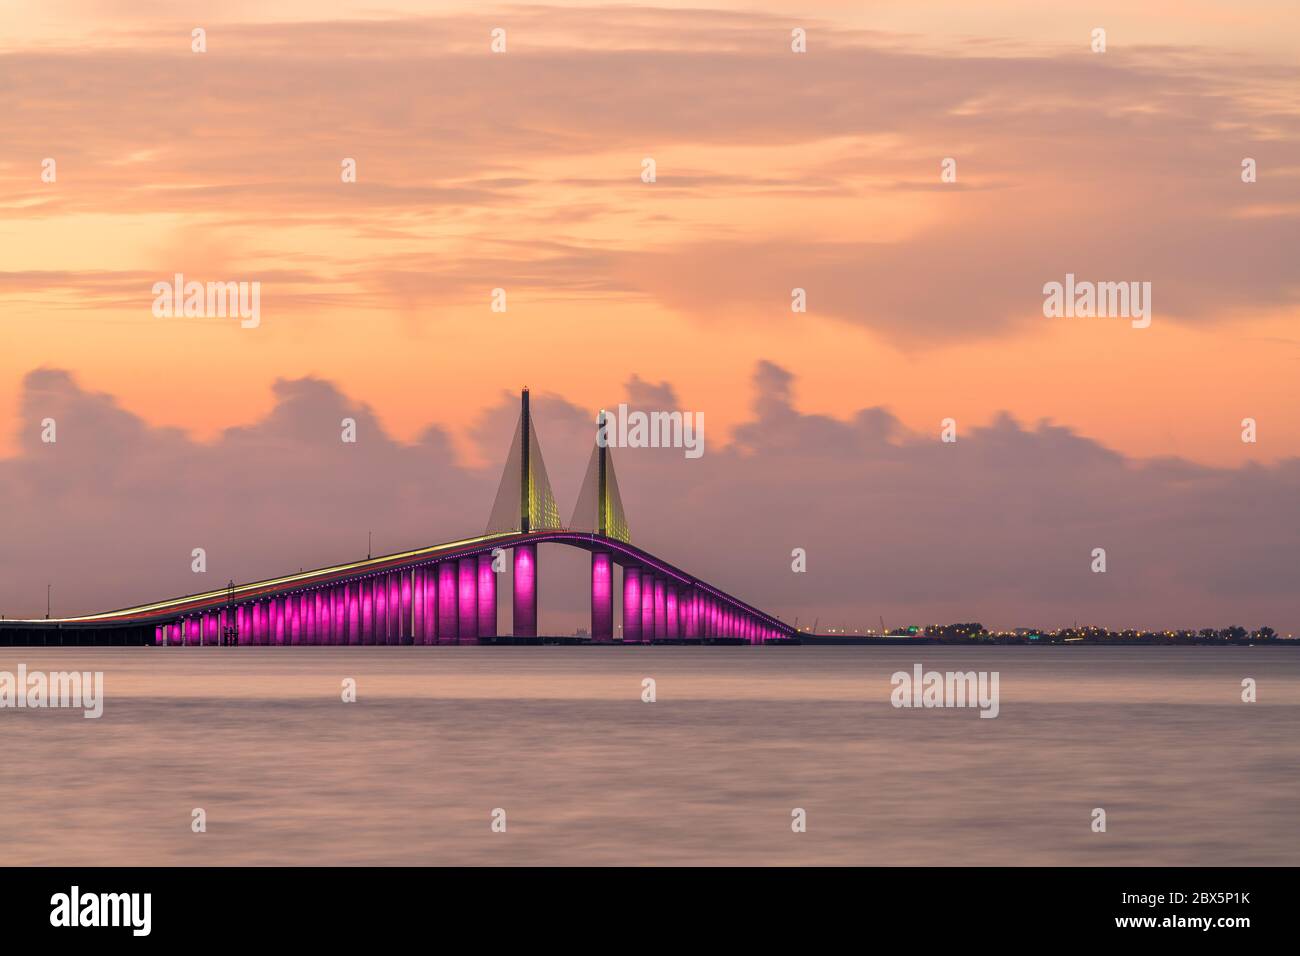 Pont Sunshine Skyway qui enjambe la baie de Tampa et relie Terra CEIA à Saint-Pétersbourg, Floride, États-Unis. Banque D'Images